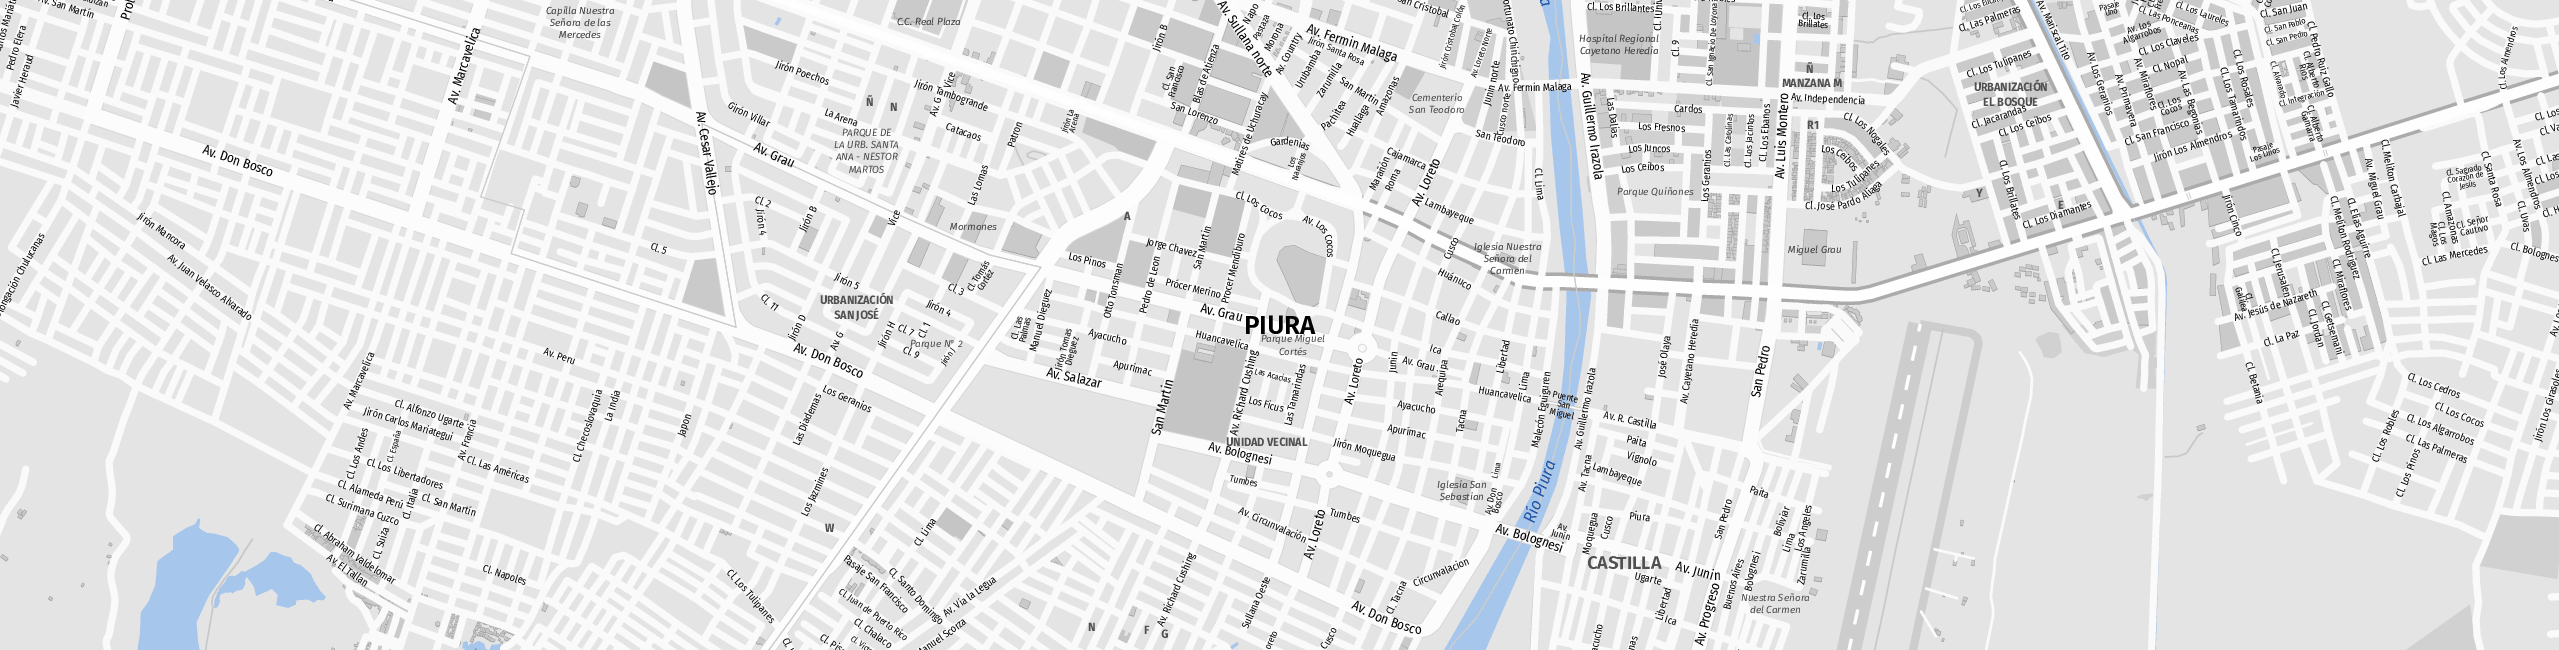 Stadtplan Piura zum Downloaden.